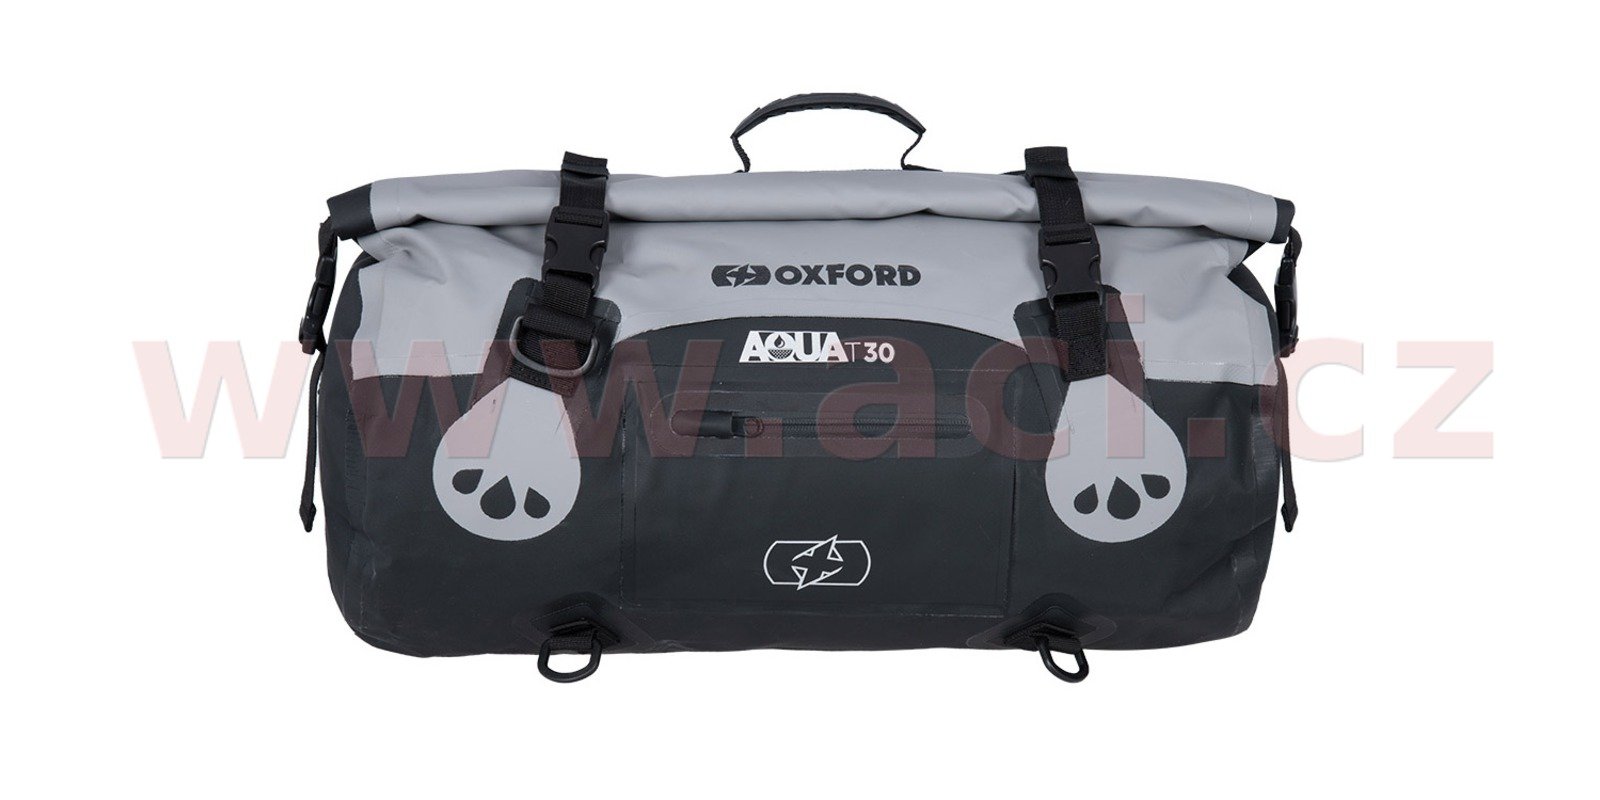 Obrázek produktu OXFORD Aqua T-30 Marine Roll Bag Black/Grey 30L OL481